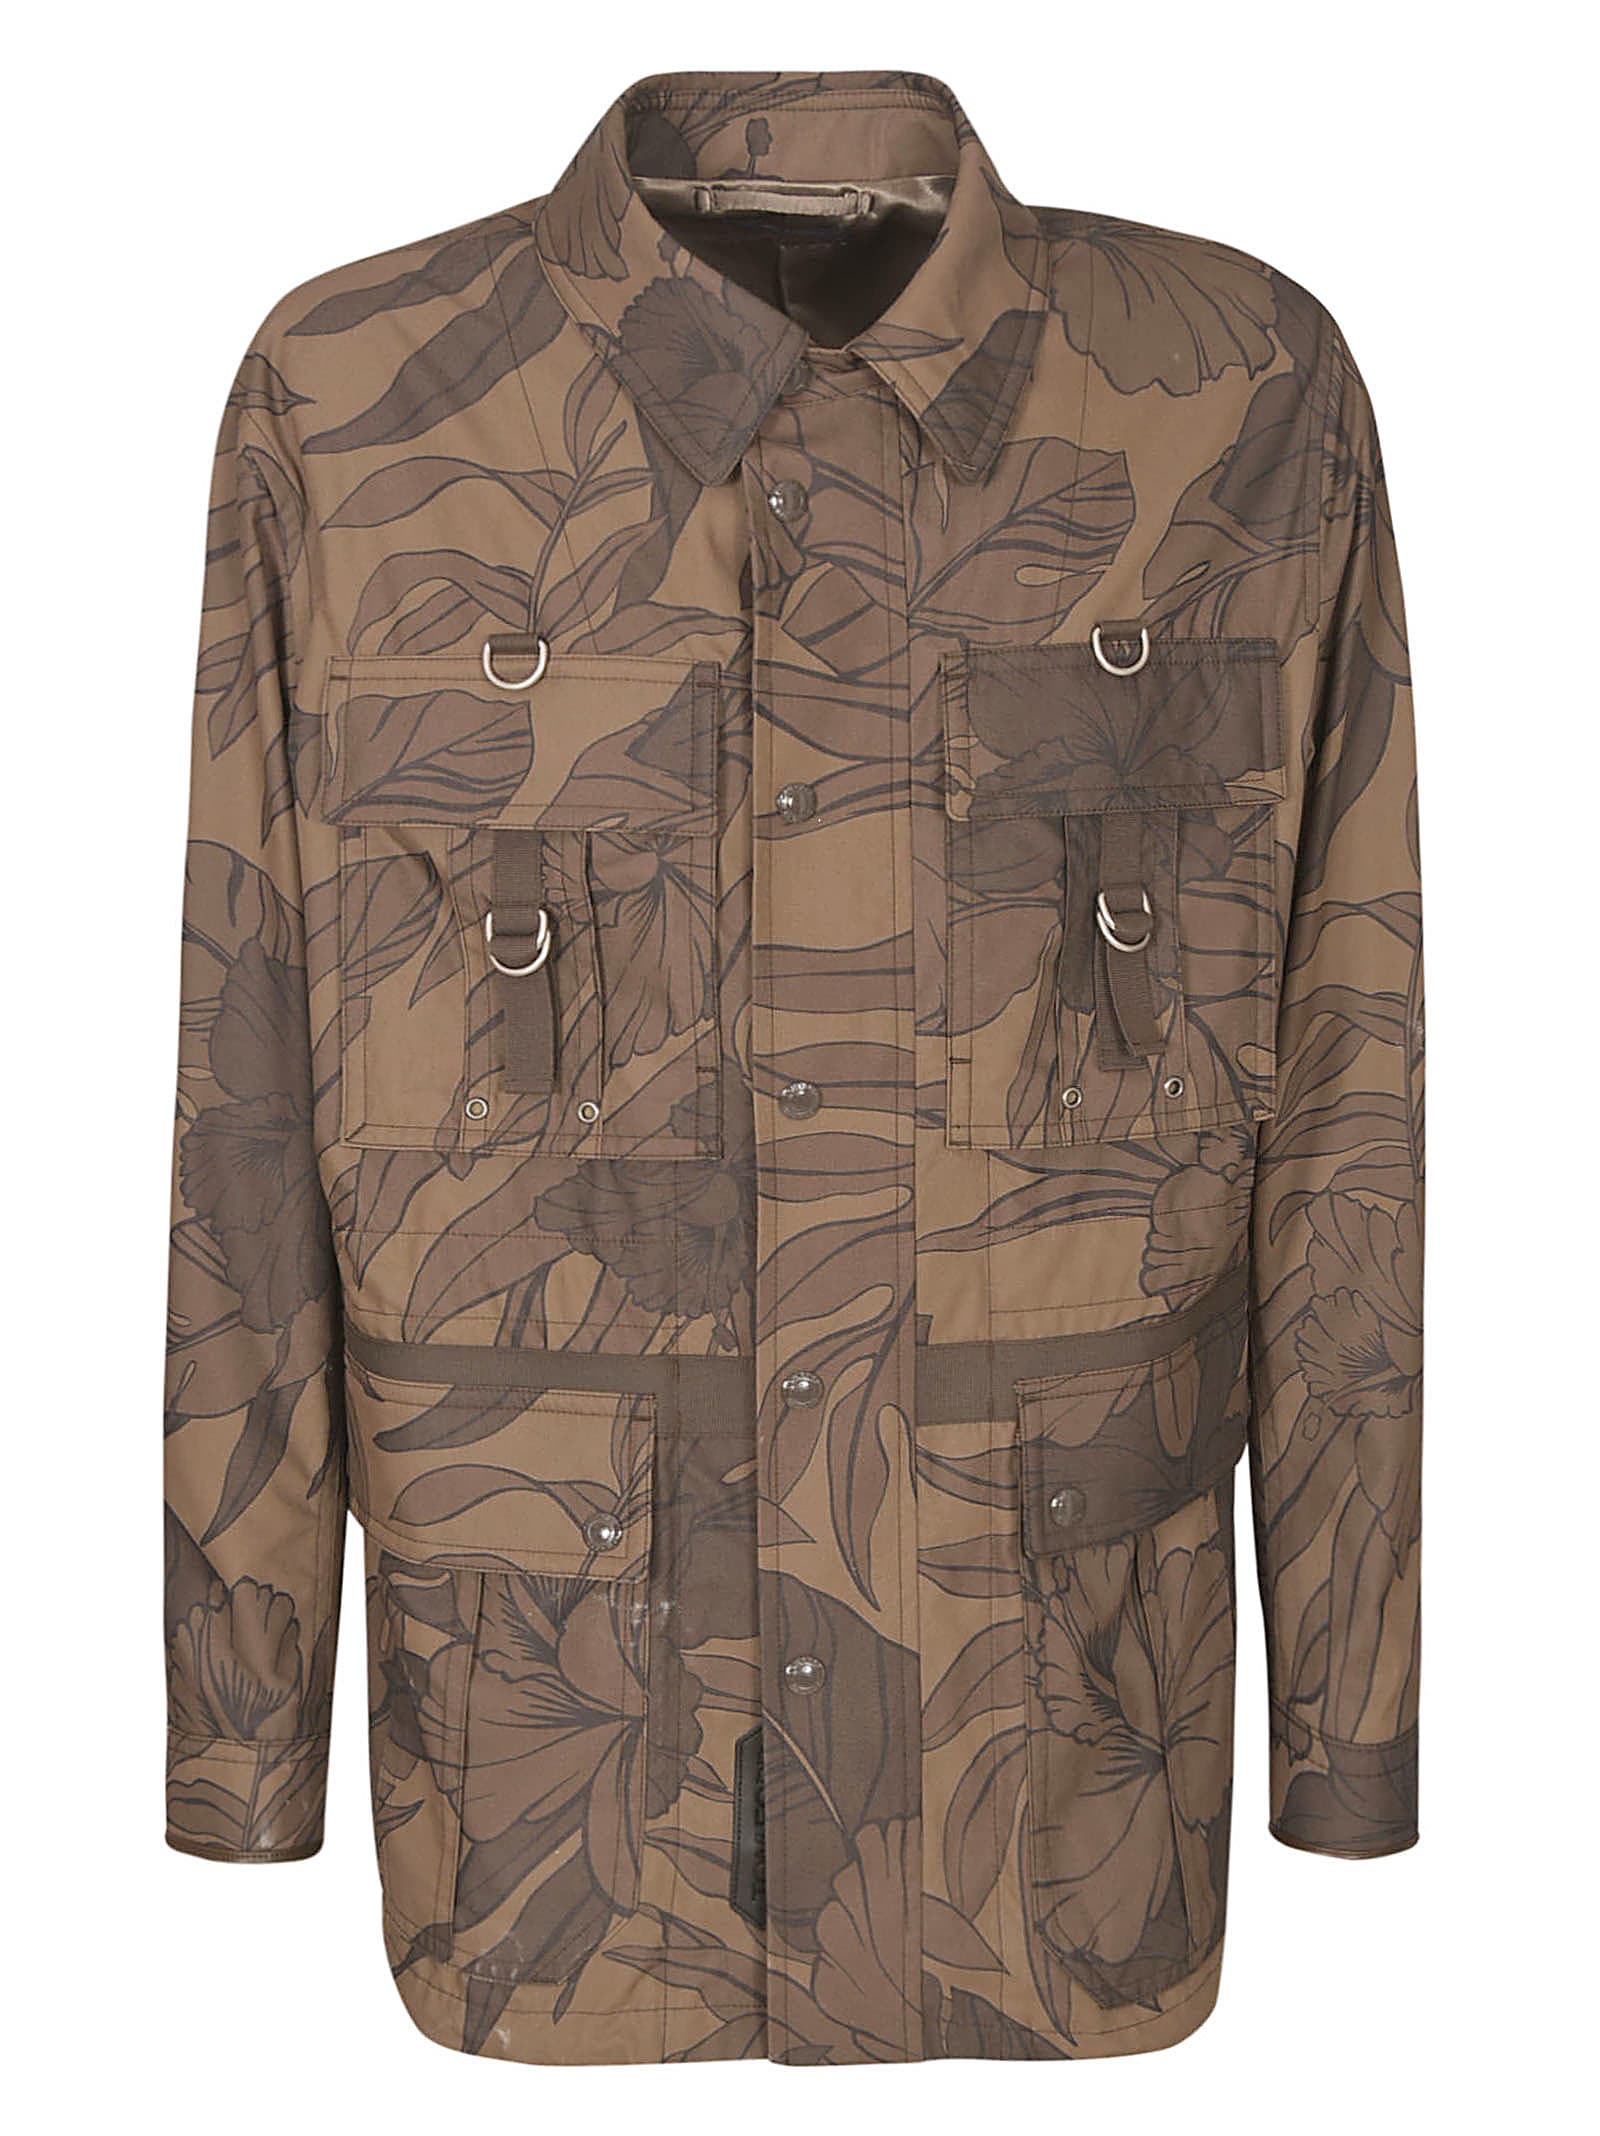 Tom Ford Leaf Printed Safari Jacket